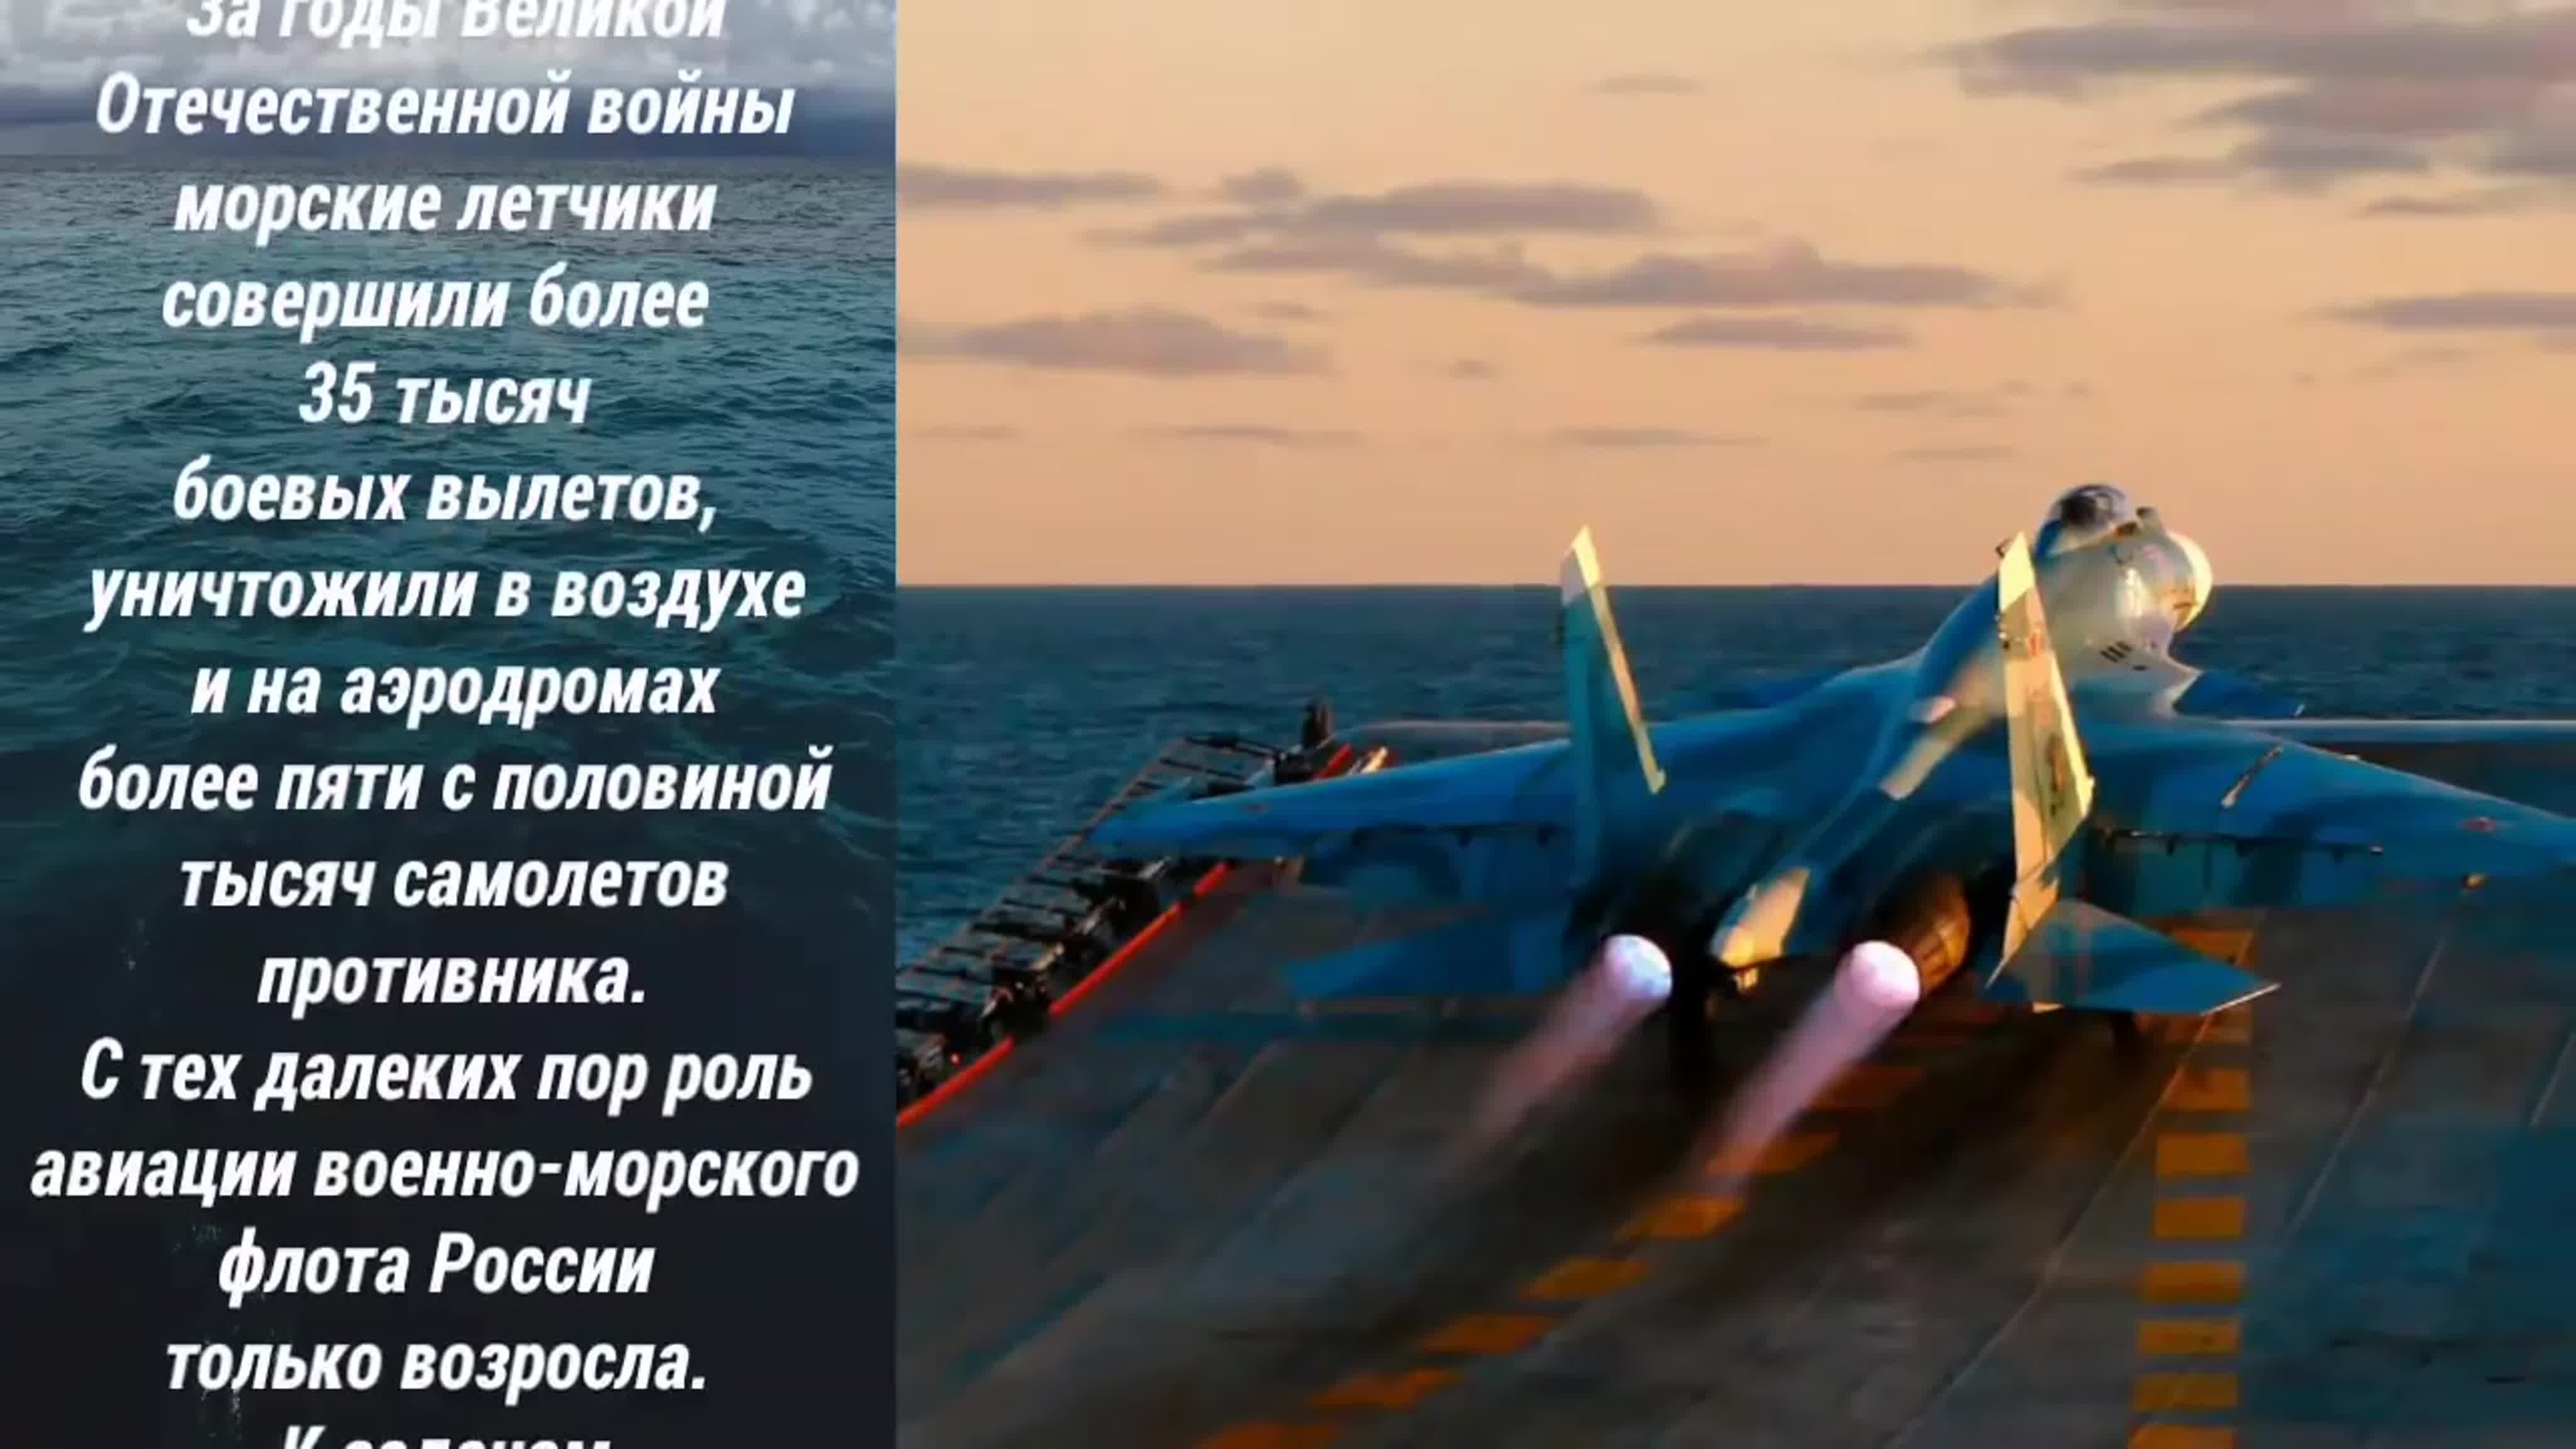 17 Июля день морской авиации военно-морского флота России